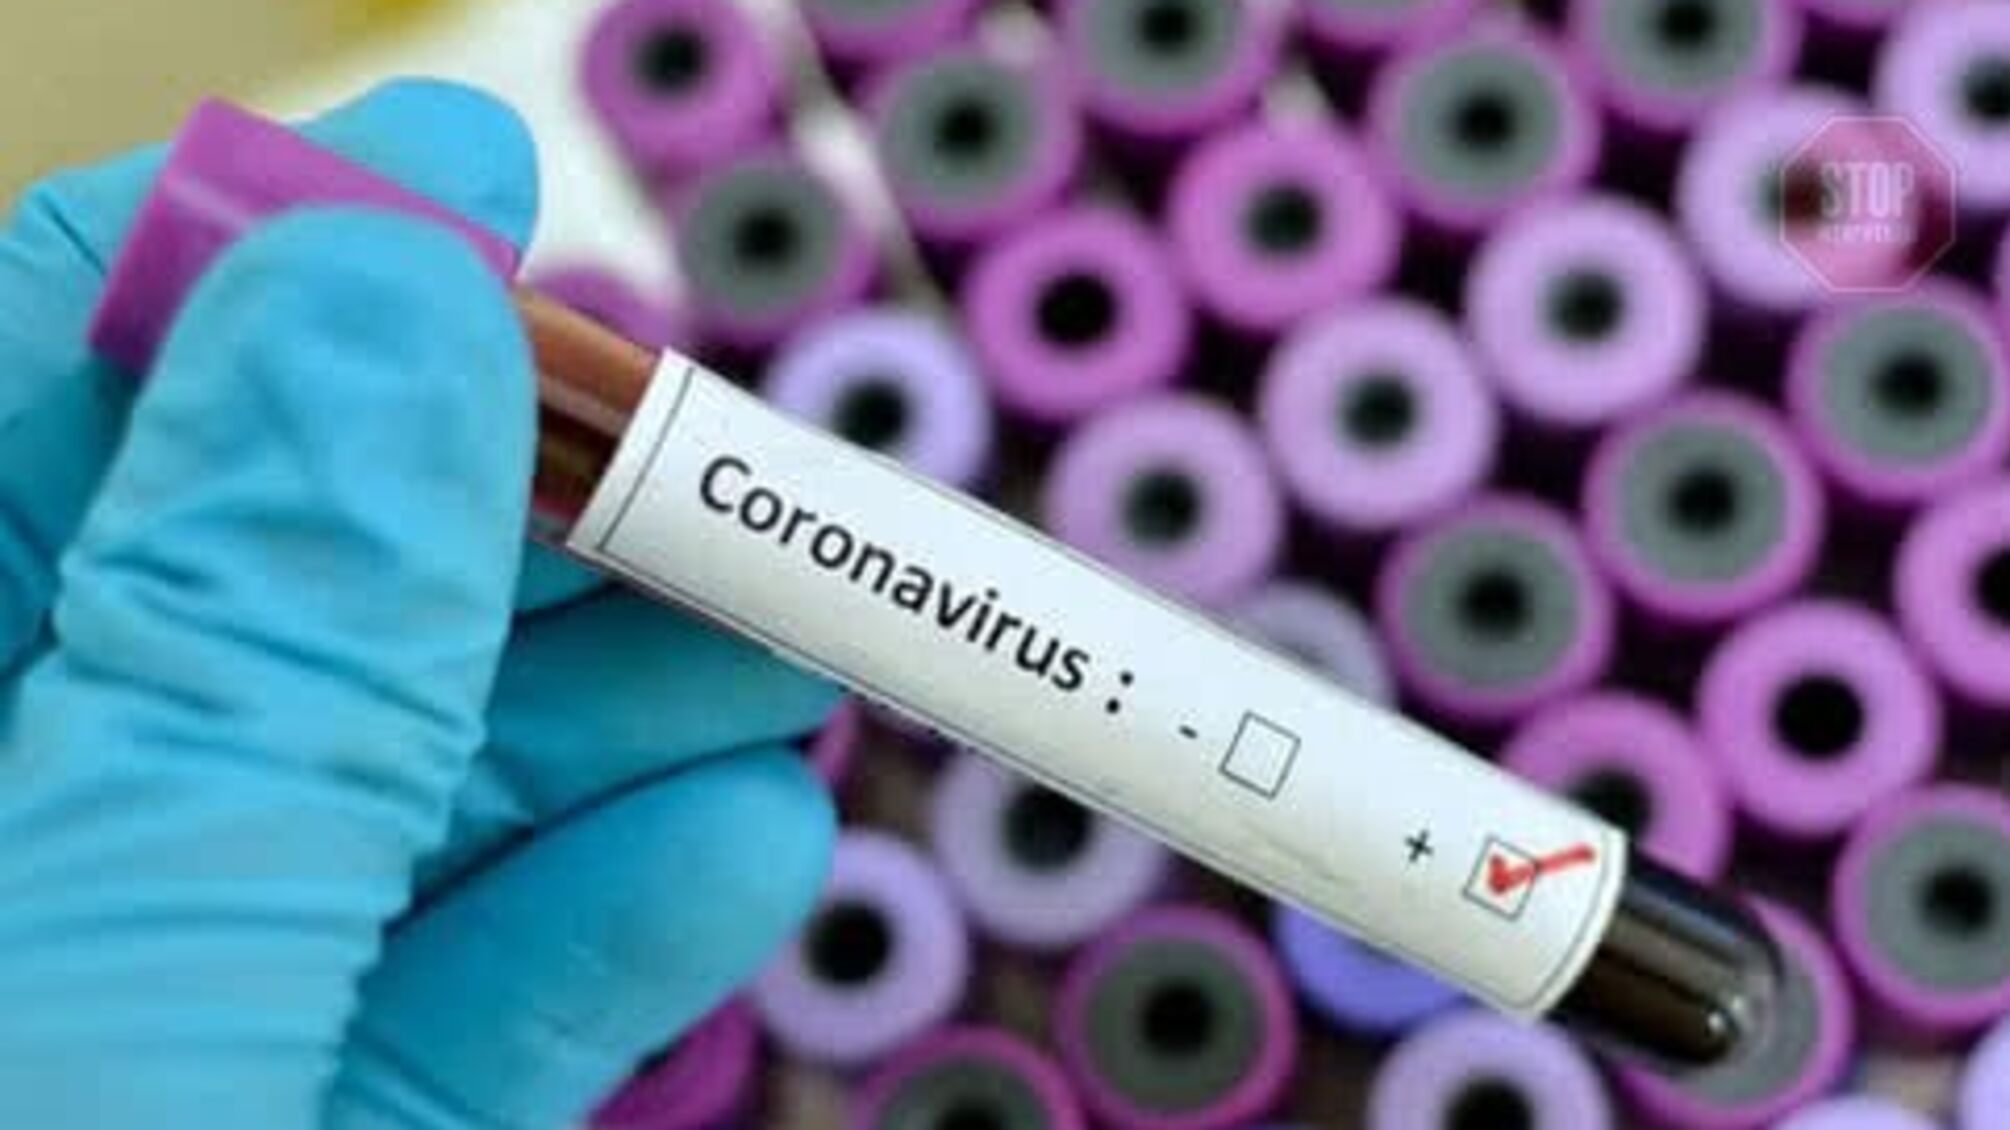 Експрес-тести на наявність коронавірусу можуть помилятися